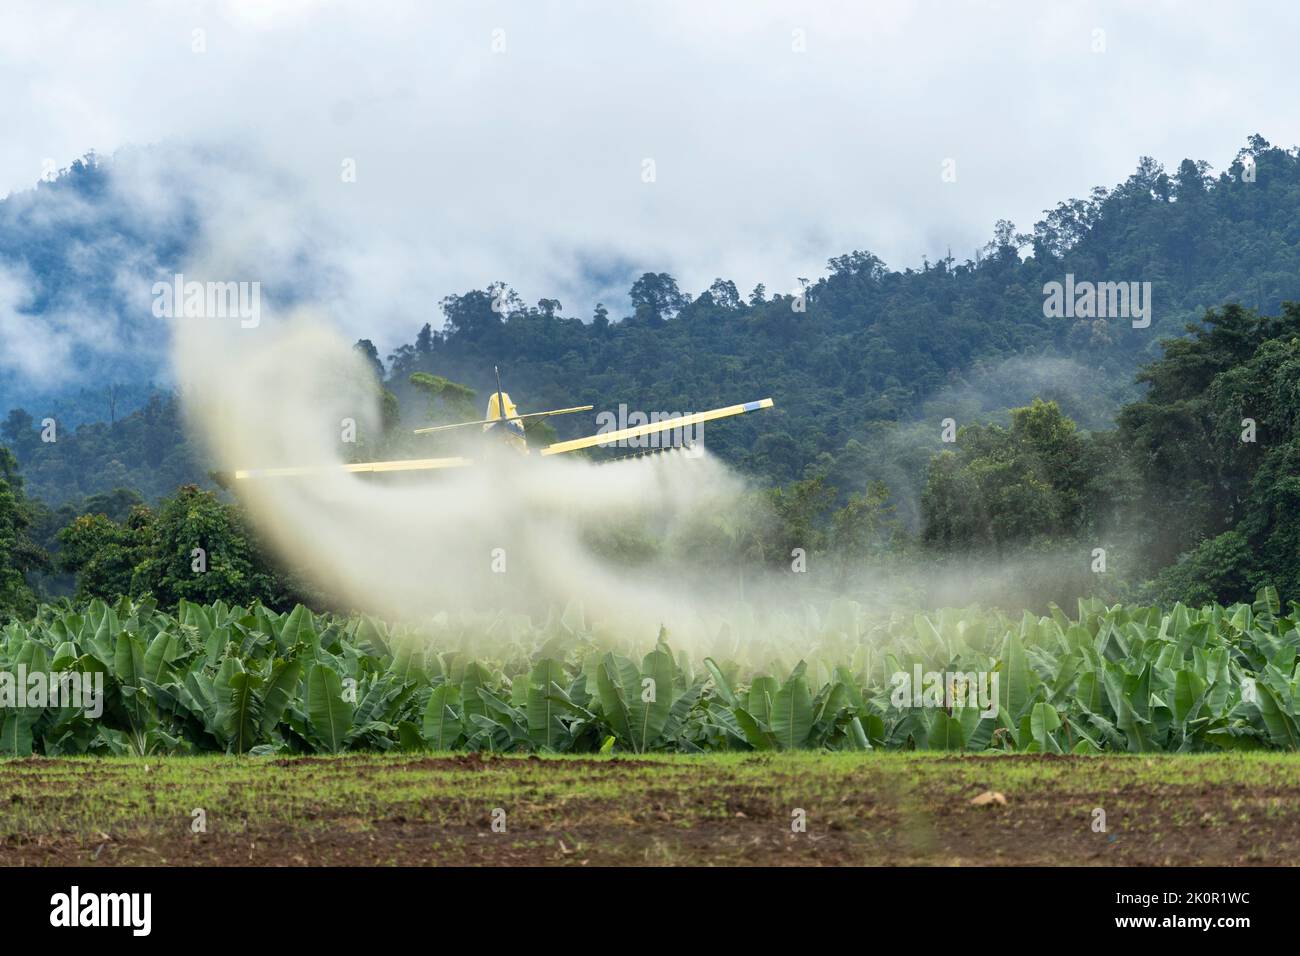 Le plumeau de récolte vole à bas niveau pour pulvériser la plantation de bananes. Tully, Queensland du Nord, Australie Banque D'Images